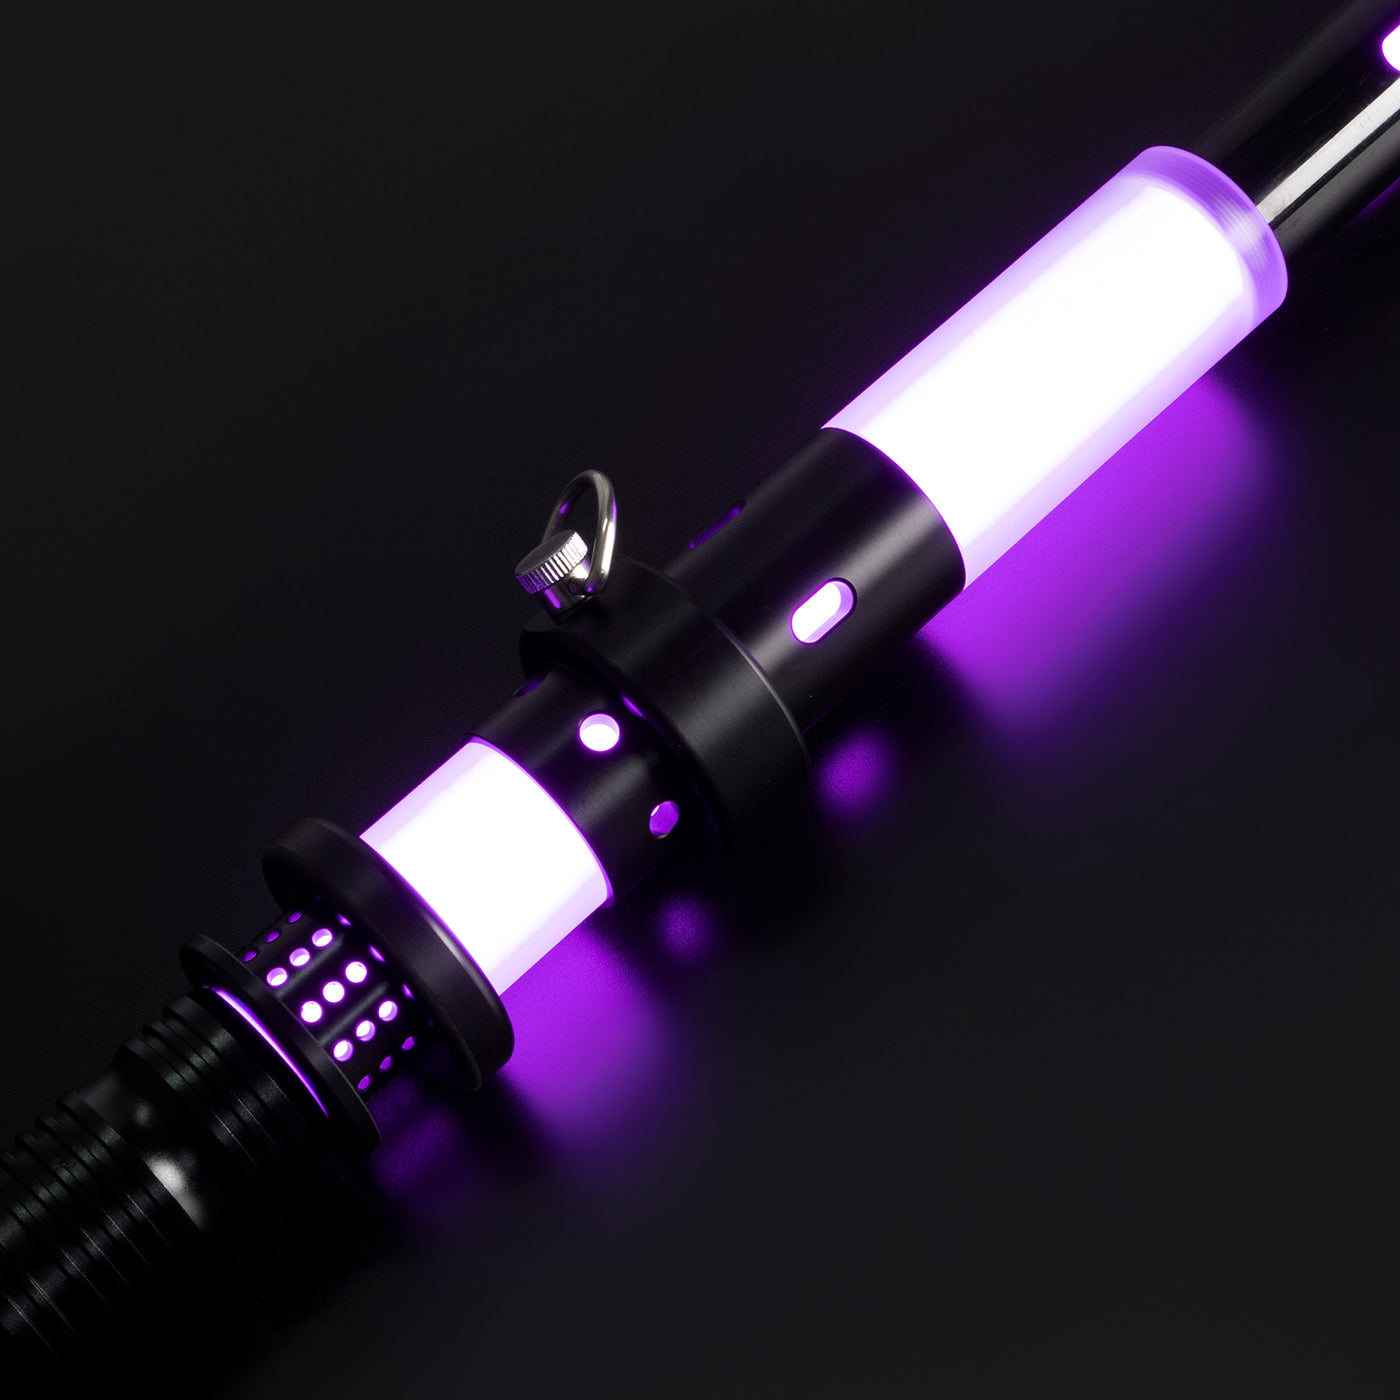 Saber schede - scrabbard - KenJo Sabers - Star Wars Lightsaber replica Jedi Sith - Best sabershop Europe - Nederland light sabers kopen -